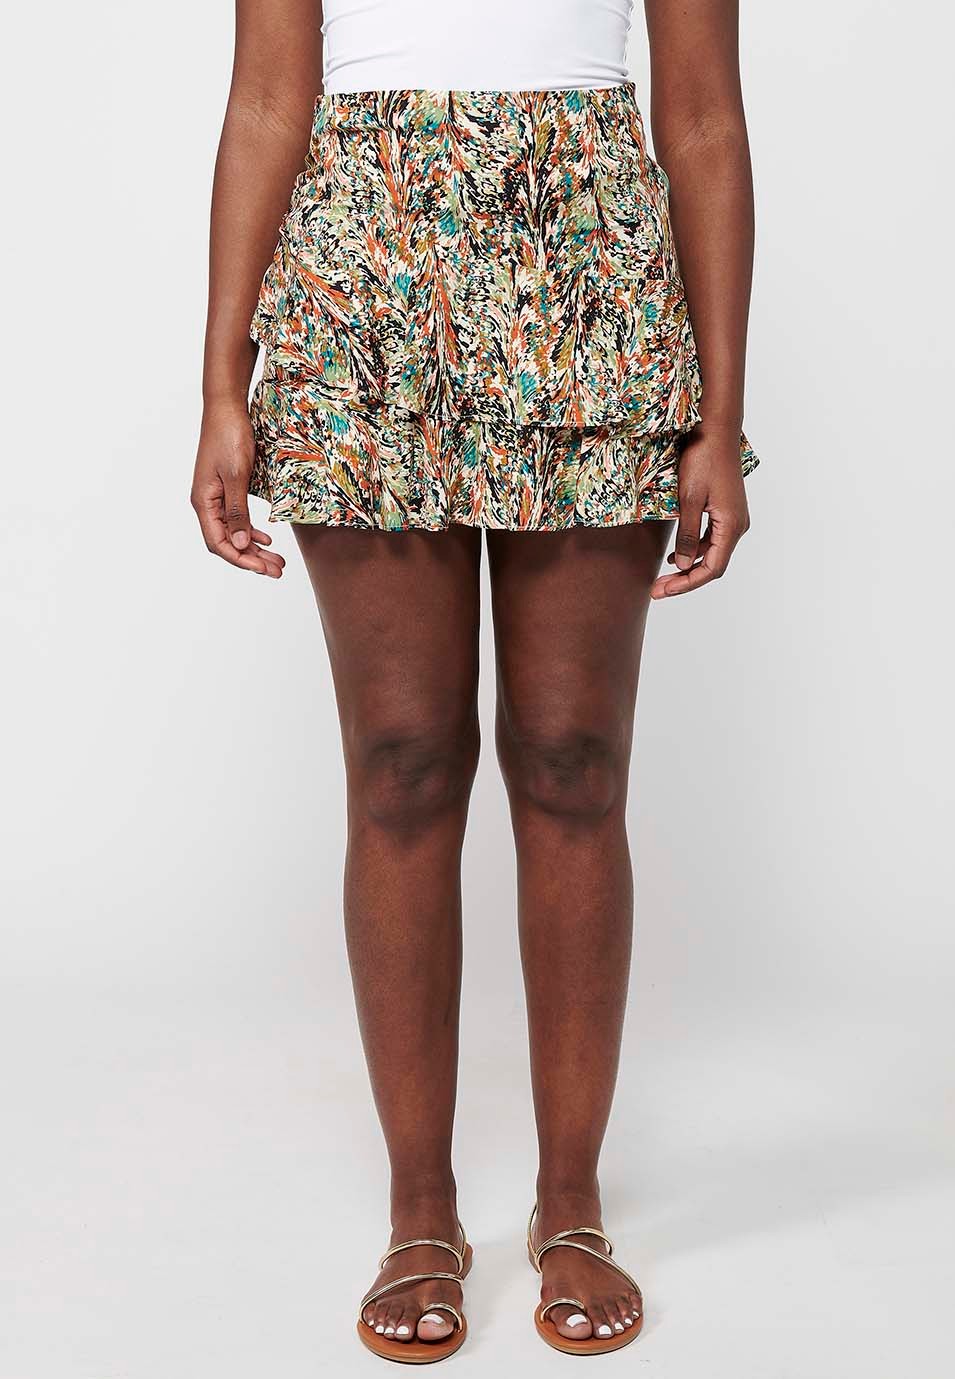 Damen-Kurzrock mit mehrfarbigem Blumendruck und seitlichem Reißverschluss